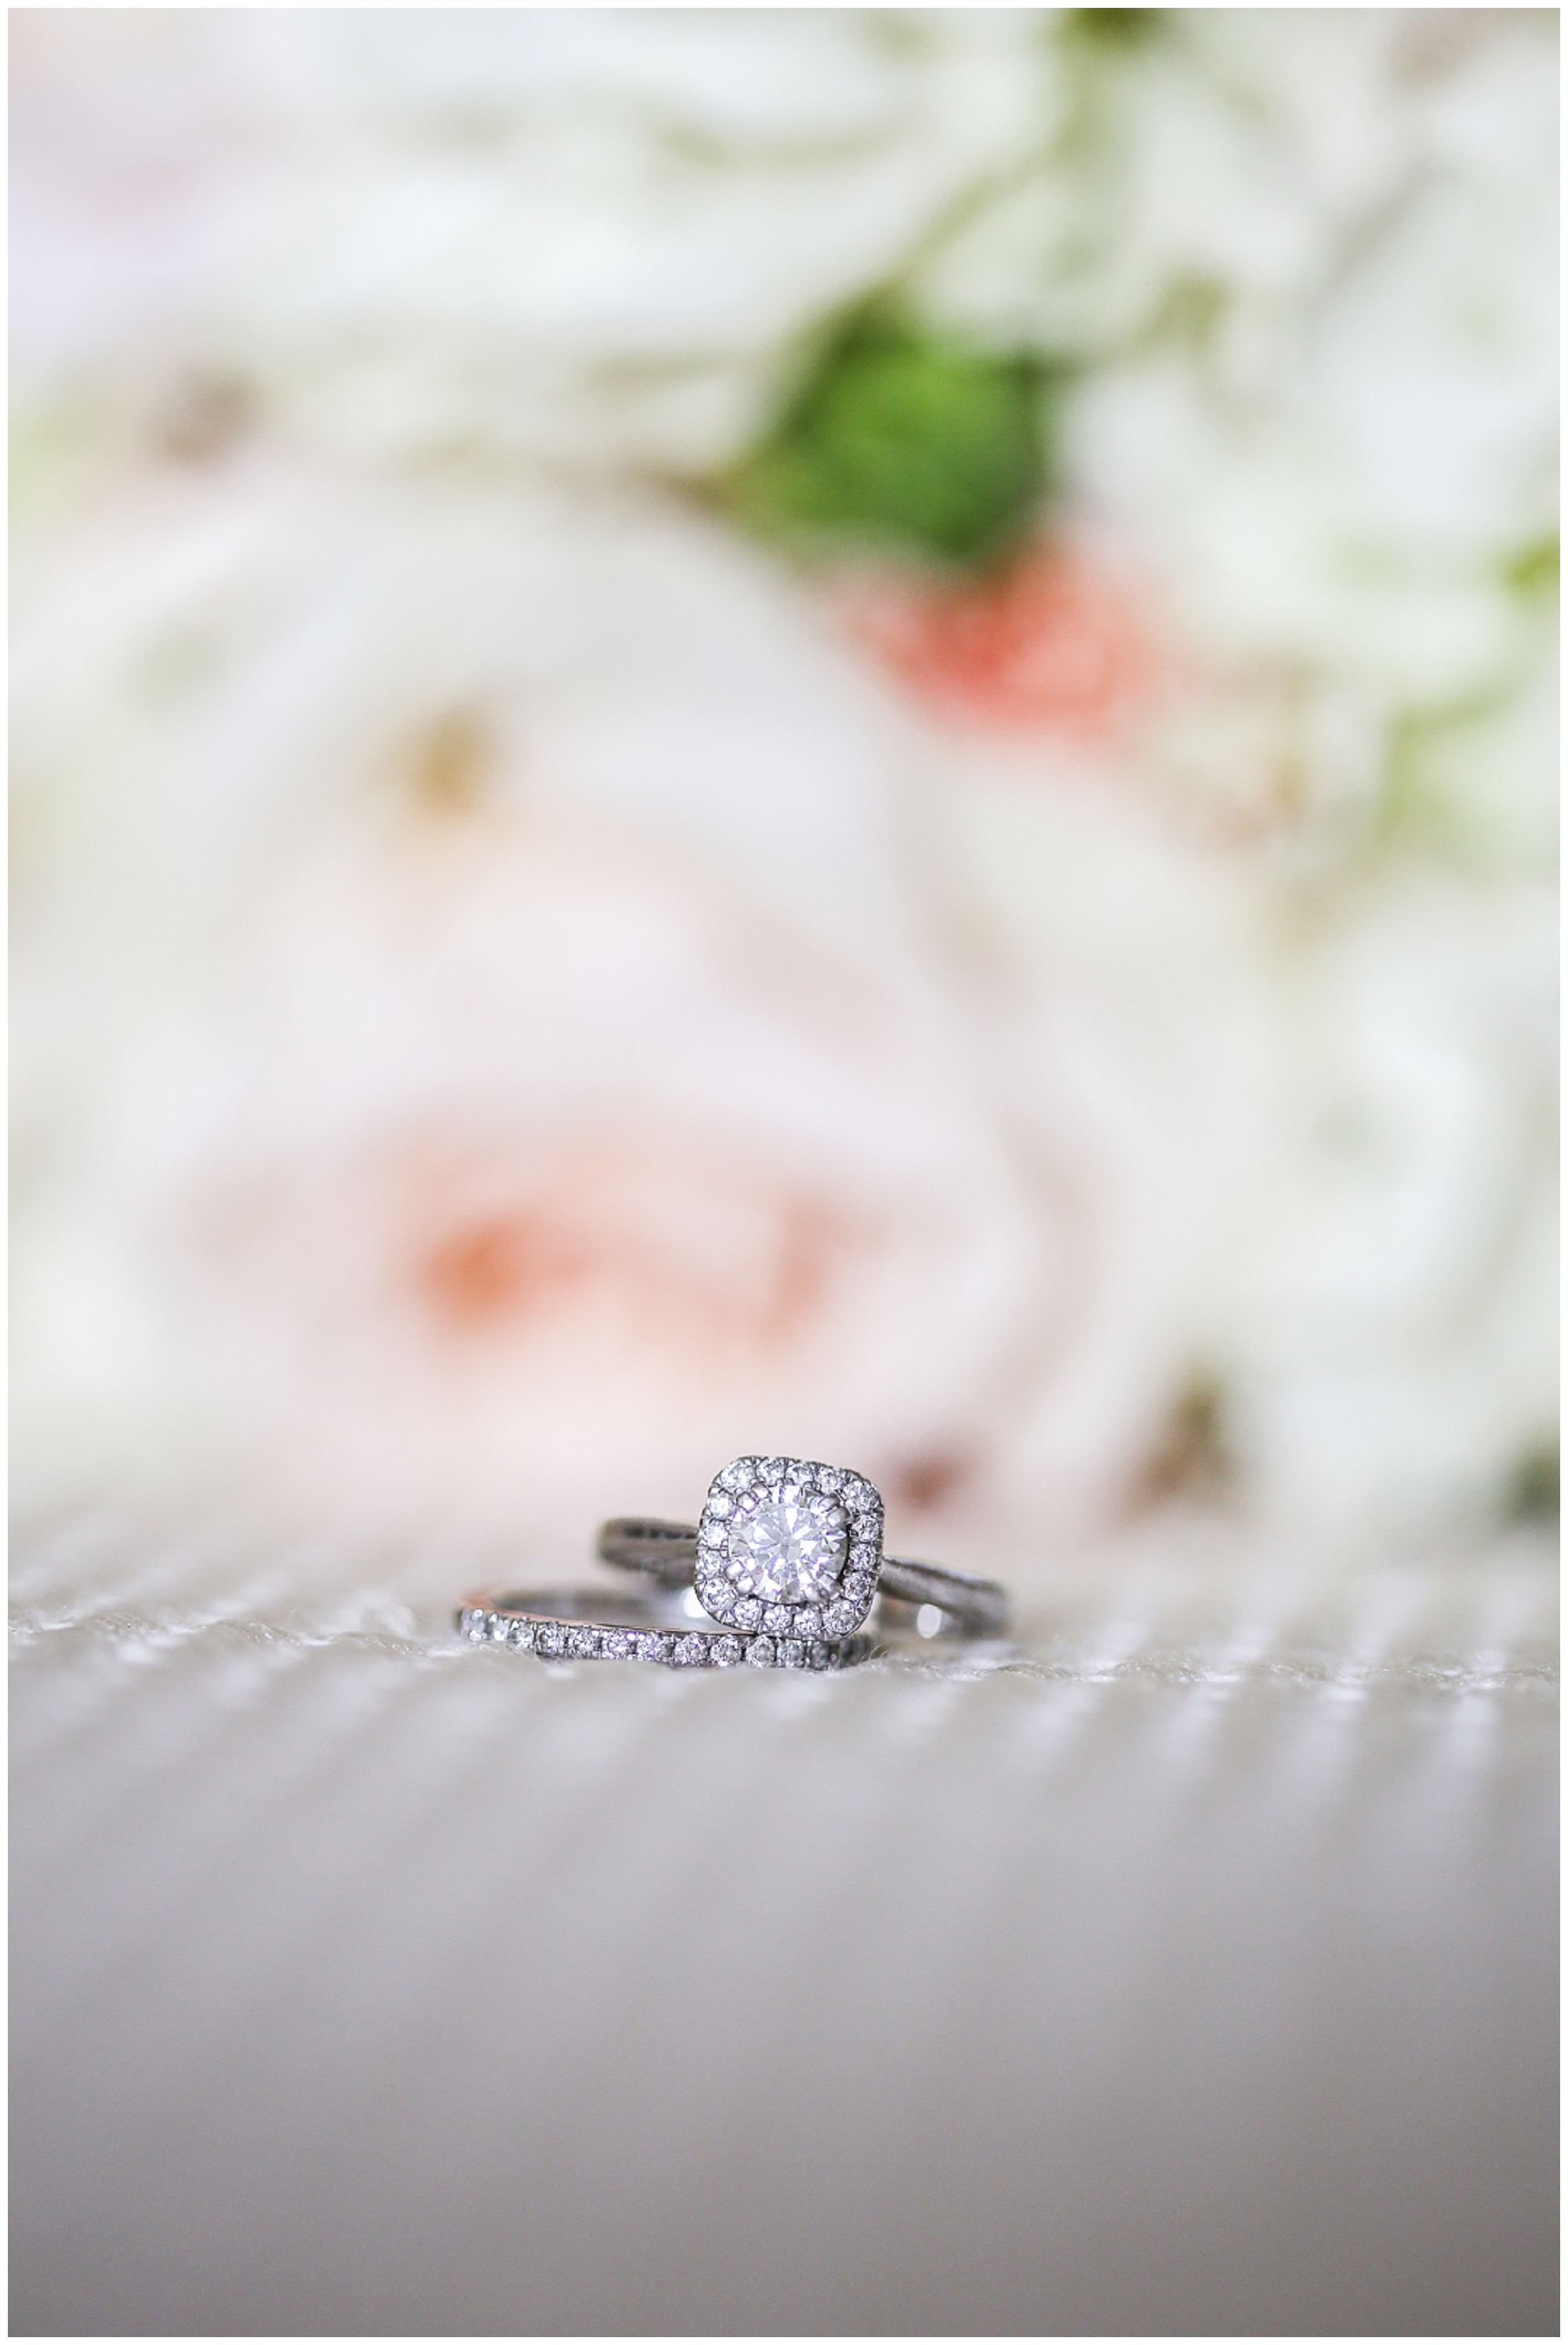 Wedding Ring - Shane Co - Overland Park Kansas Wedding Photography